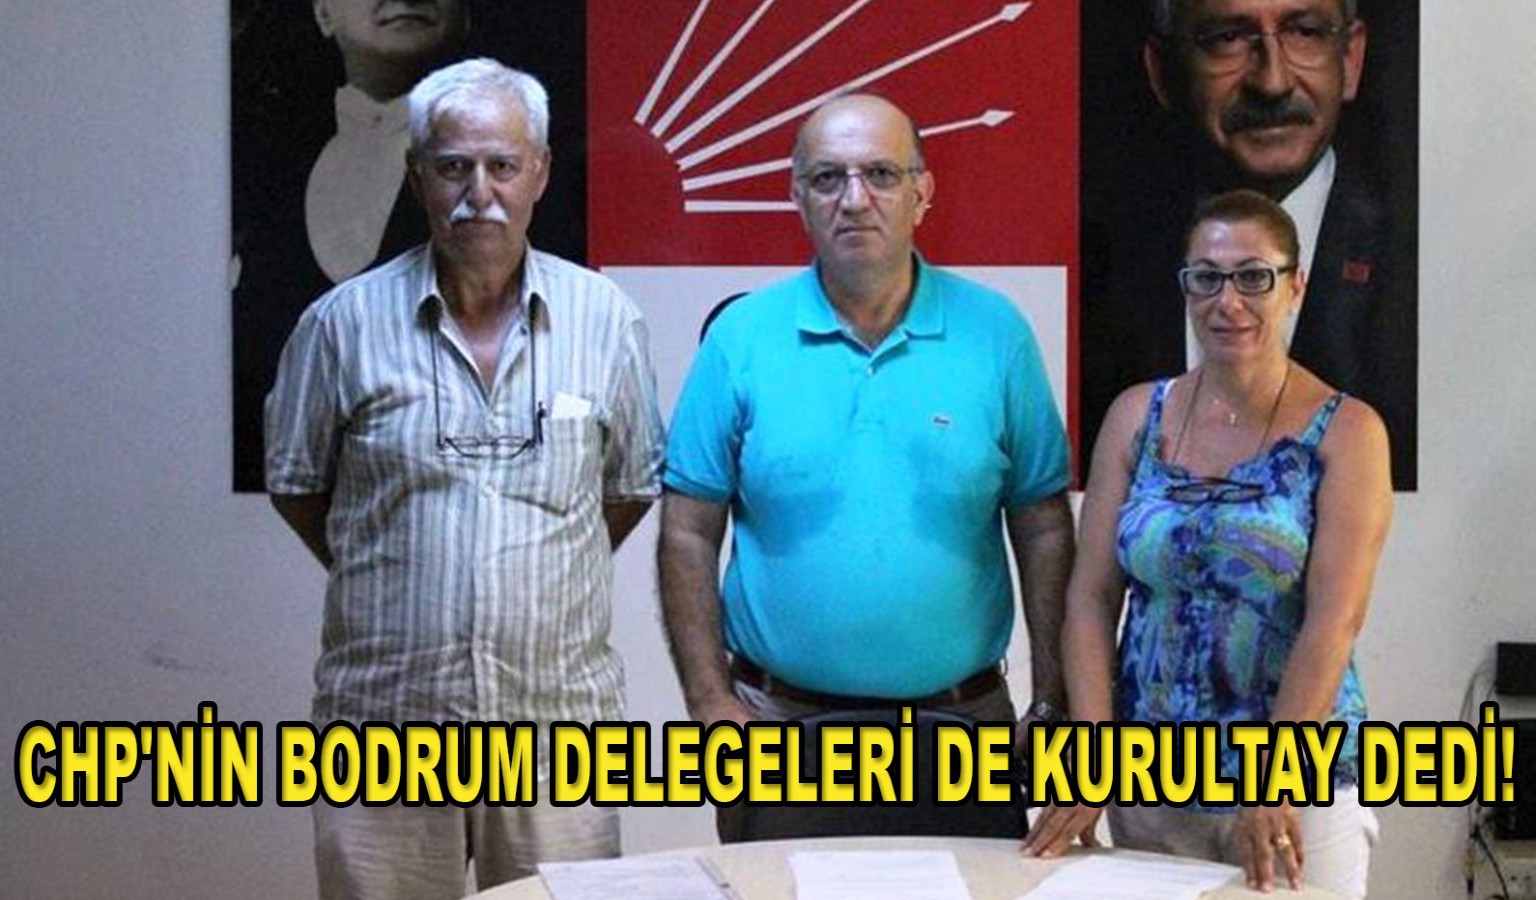 CHP'NİN BODRUM DELEGELERİ DE KURULTAY DEDİ!